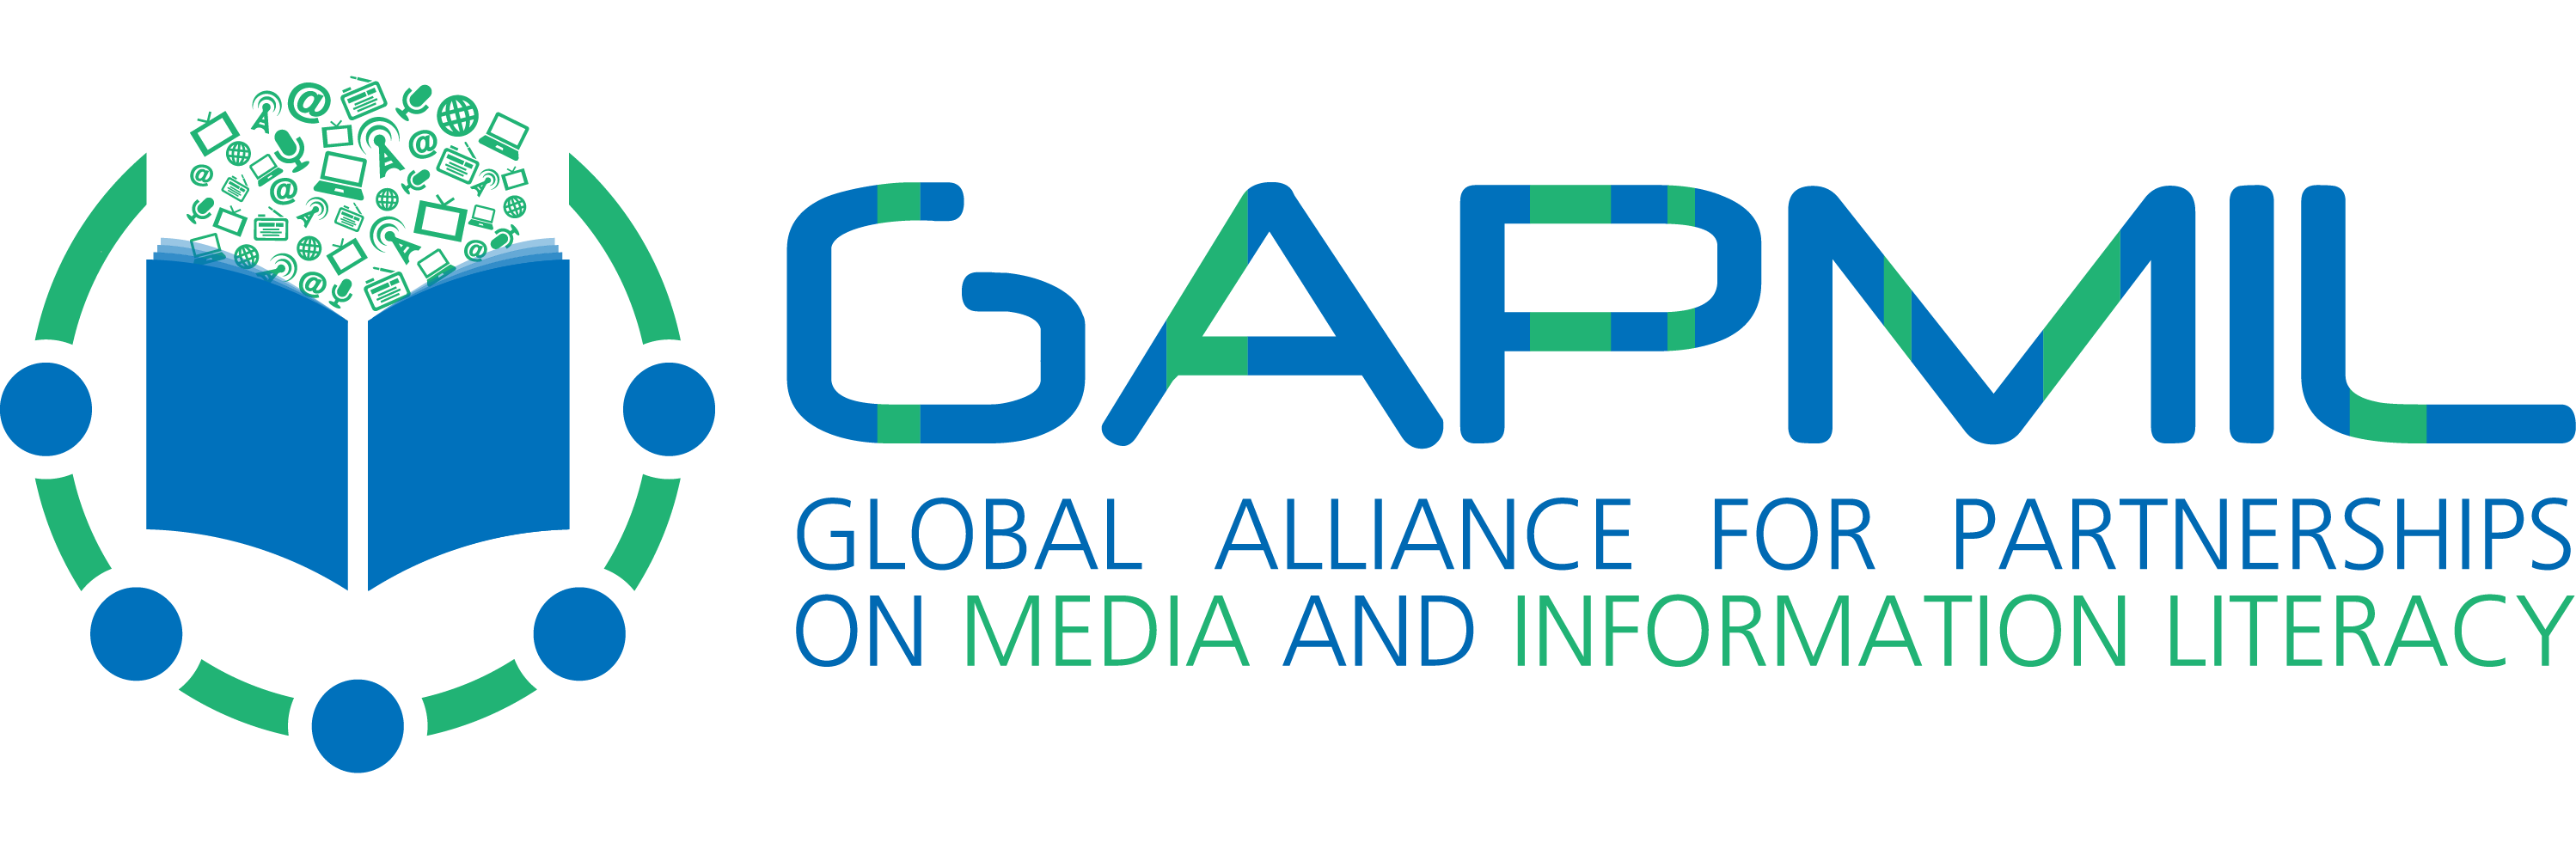 Alliance mondiale de l’UNESCO pour des partenariats en matière de maîtrise de l’information et des médias (GAPMIL) Appel à candidatures pour les jeunes ambassadeurs 2019